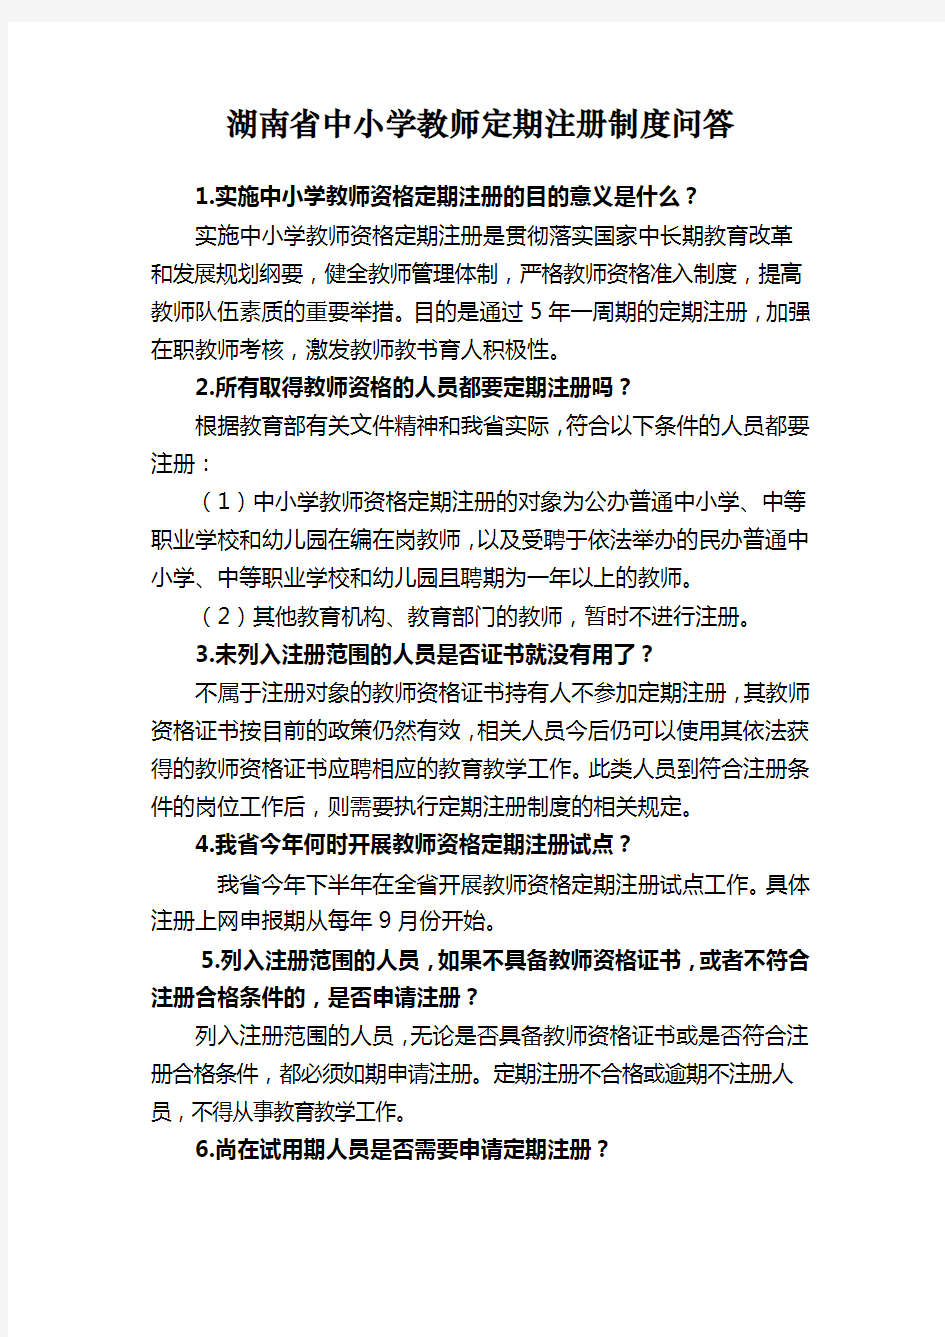 湖南中小学教师定期注册制度问答教程文件